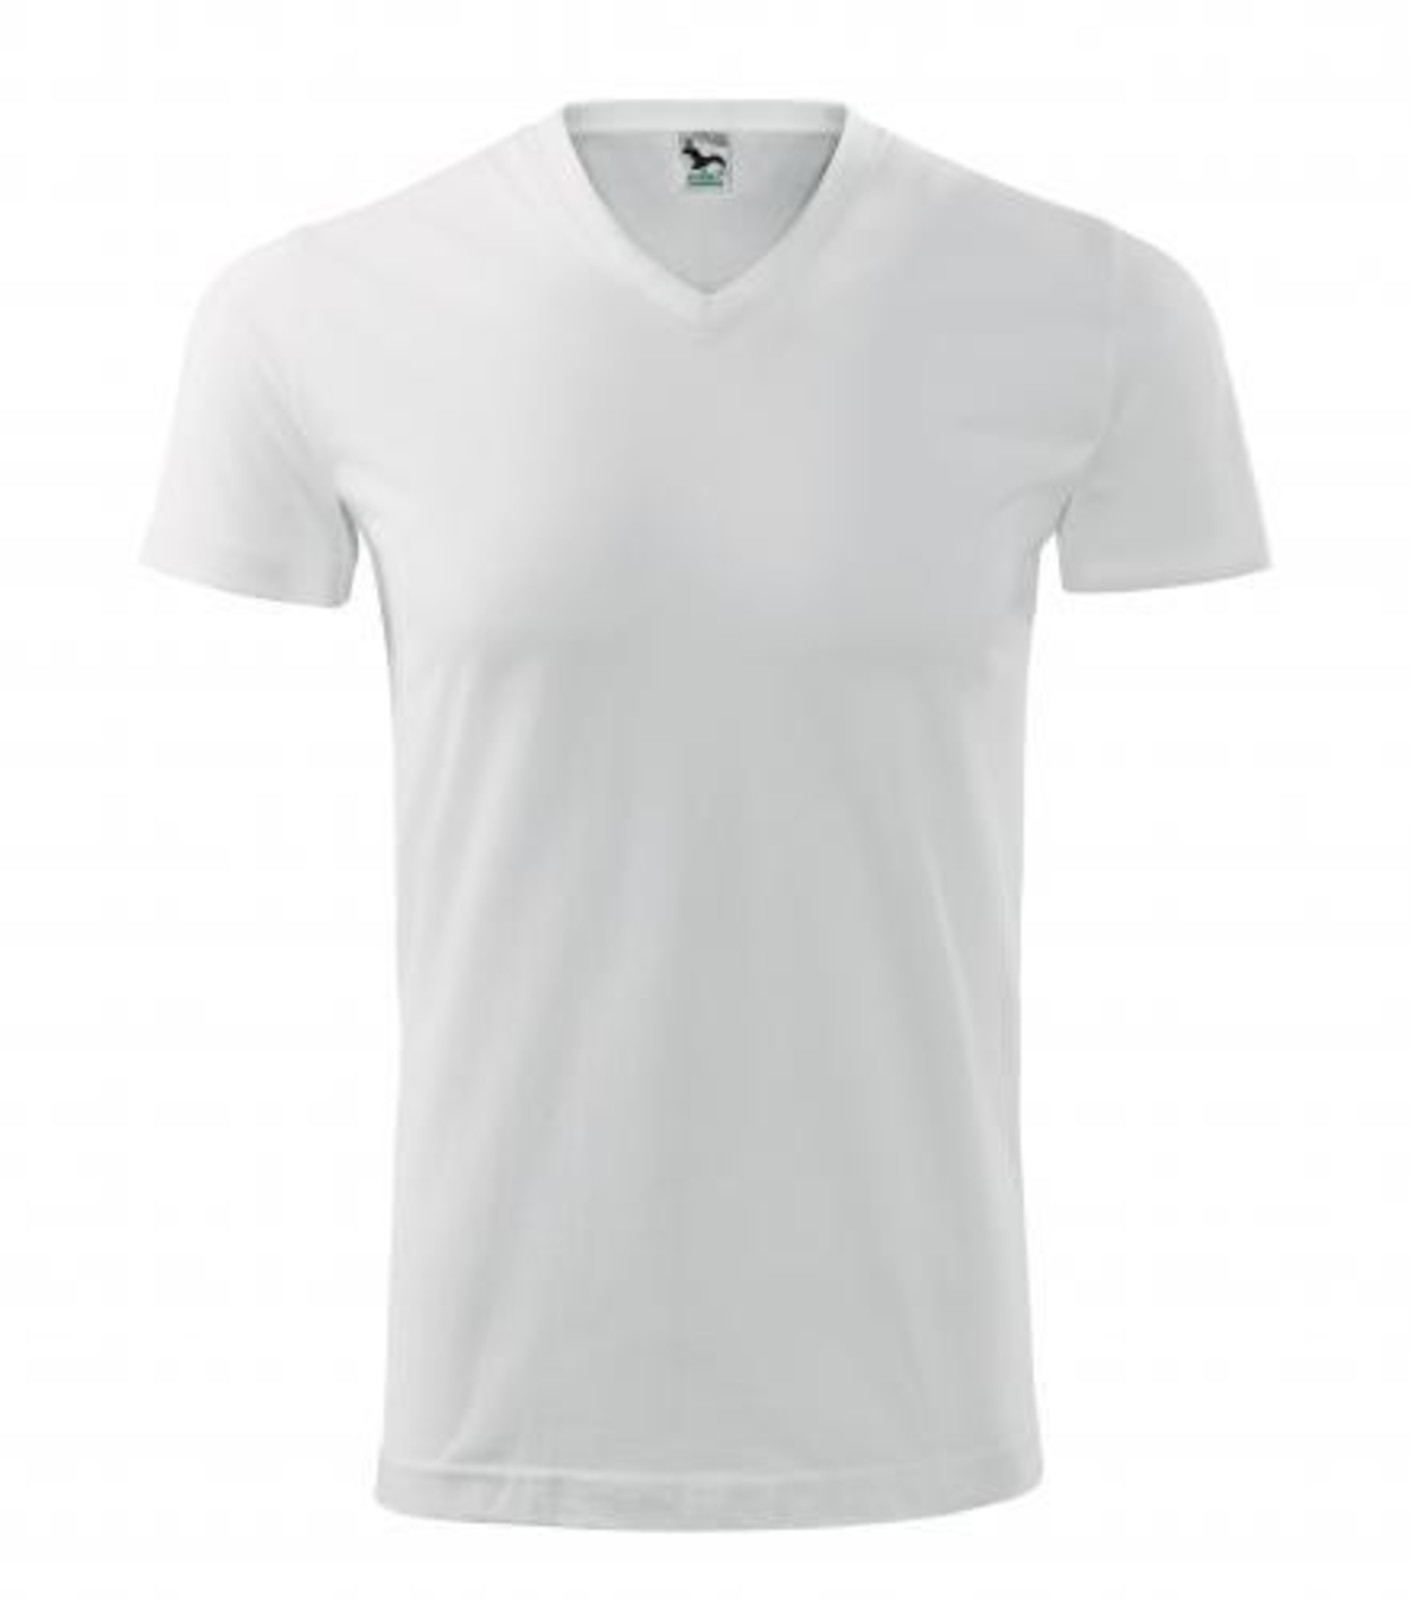 Unisex tričko s V výstrihom Adler Heavy V-Neck 111 - veľkosť: XXL, farba: biela